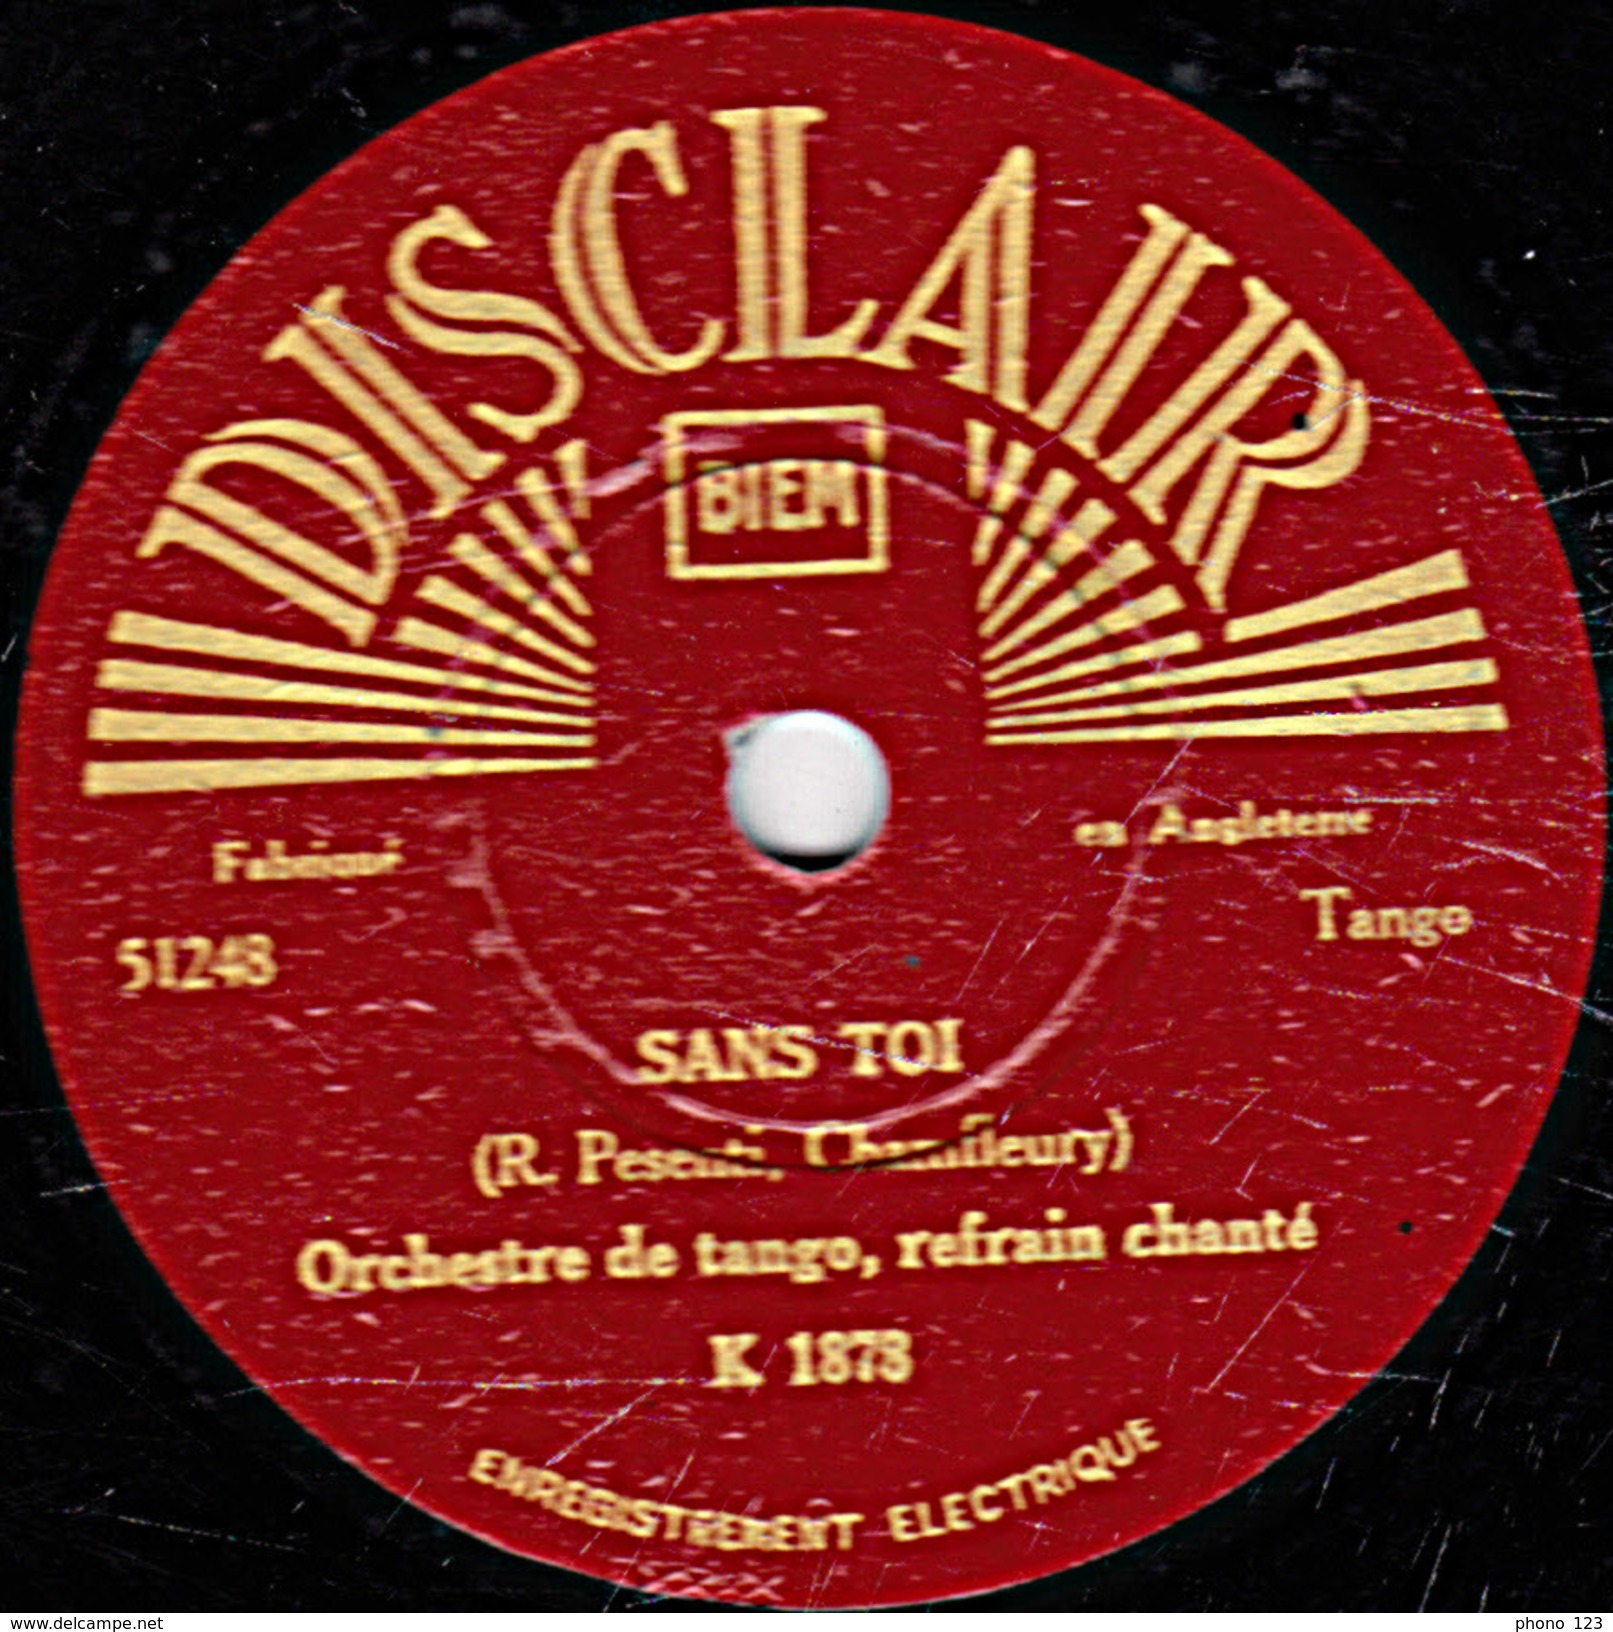 78 T. - 25 Cm - état B - Orch. De Tango Refrain Chanté - SANS TOI - PAPUSITA - 78 T - Disques Pour Gramophone